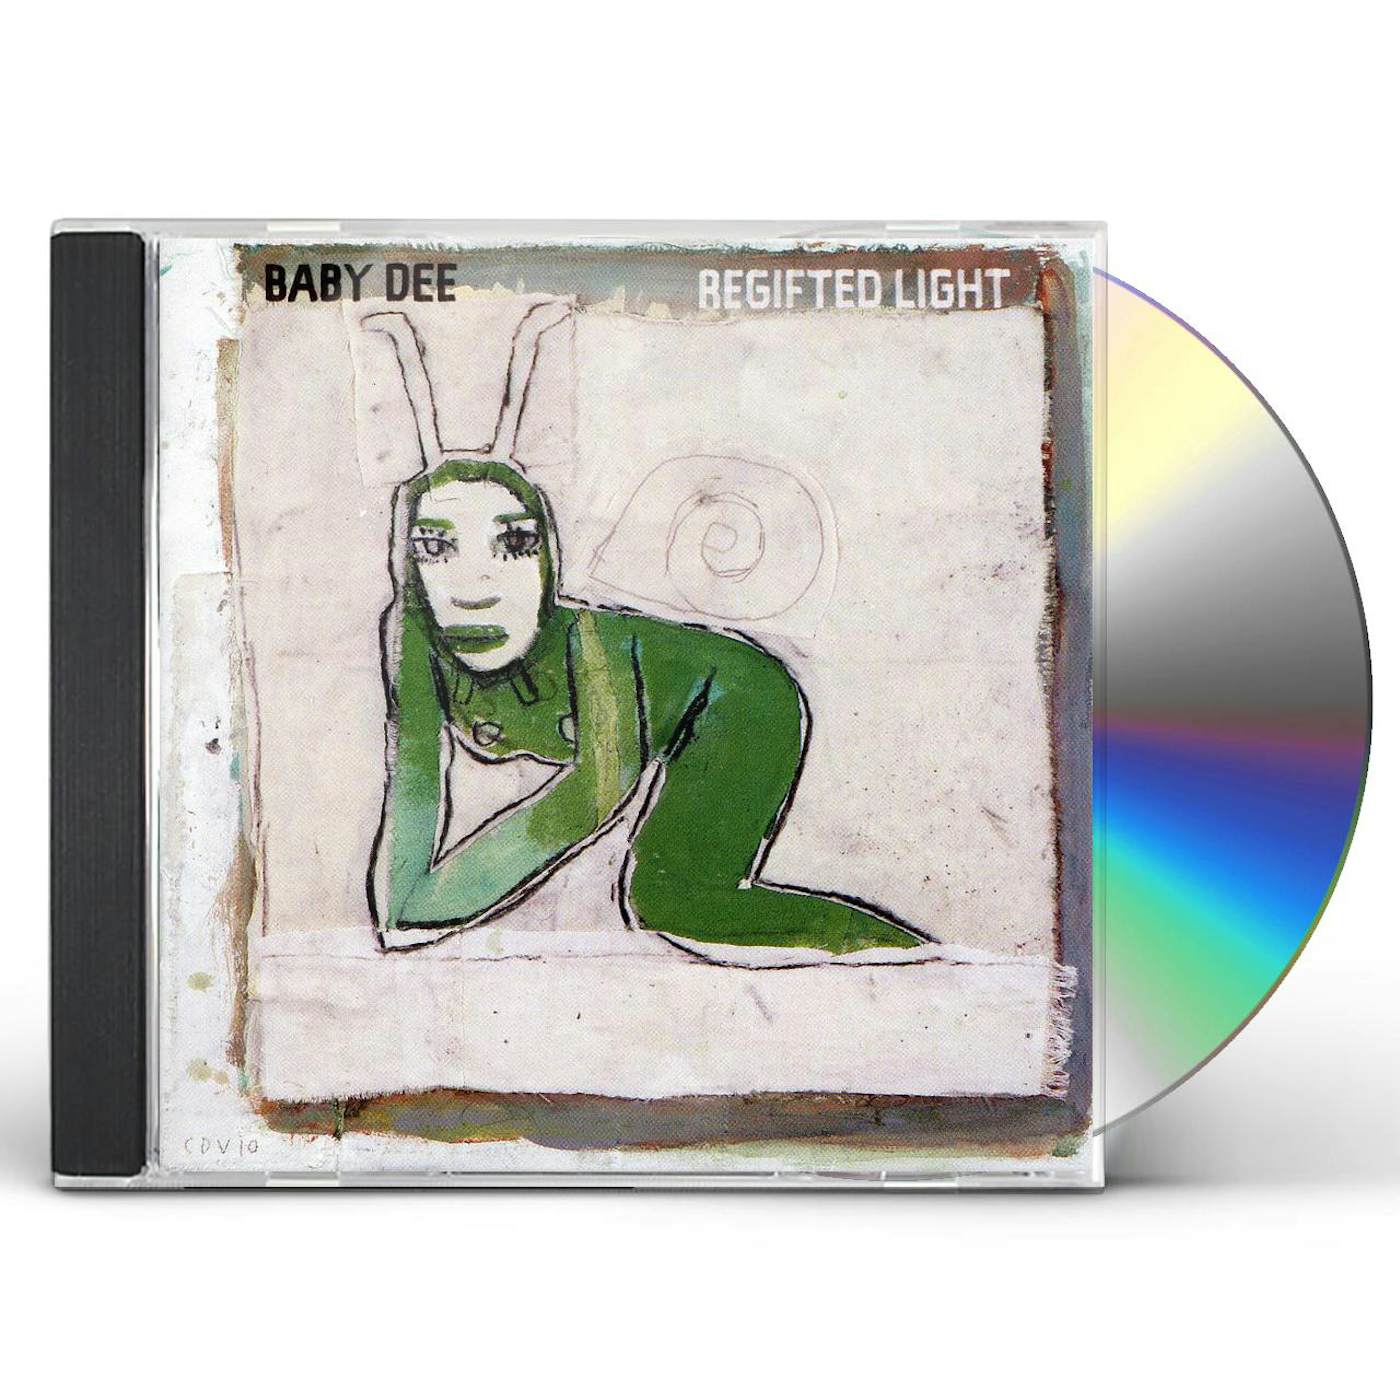 Baby Dee REGIFTED LIGHT CD